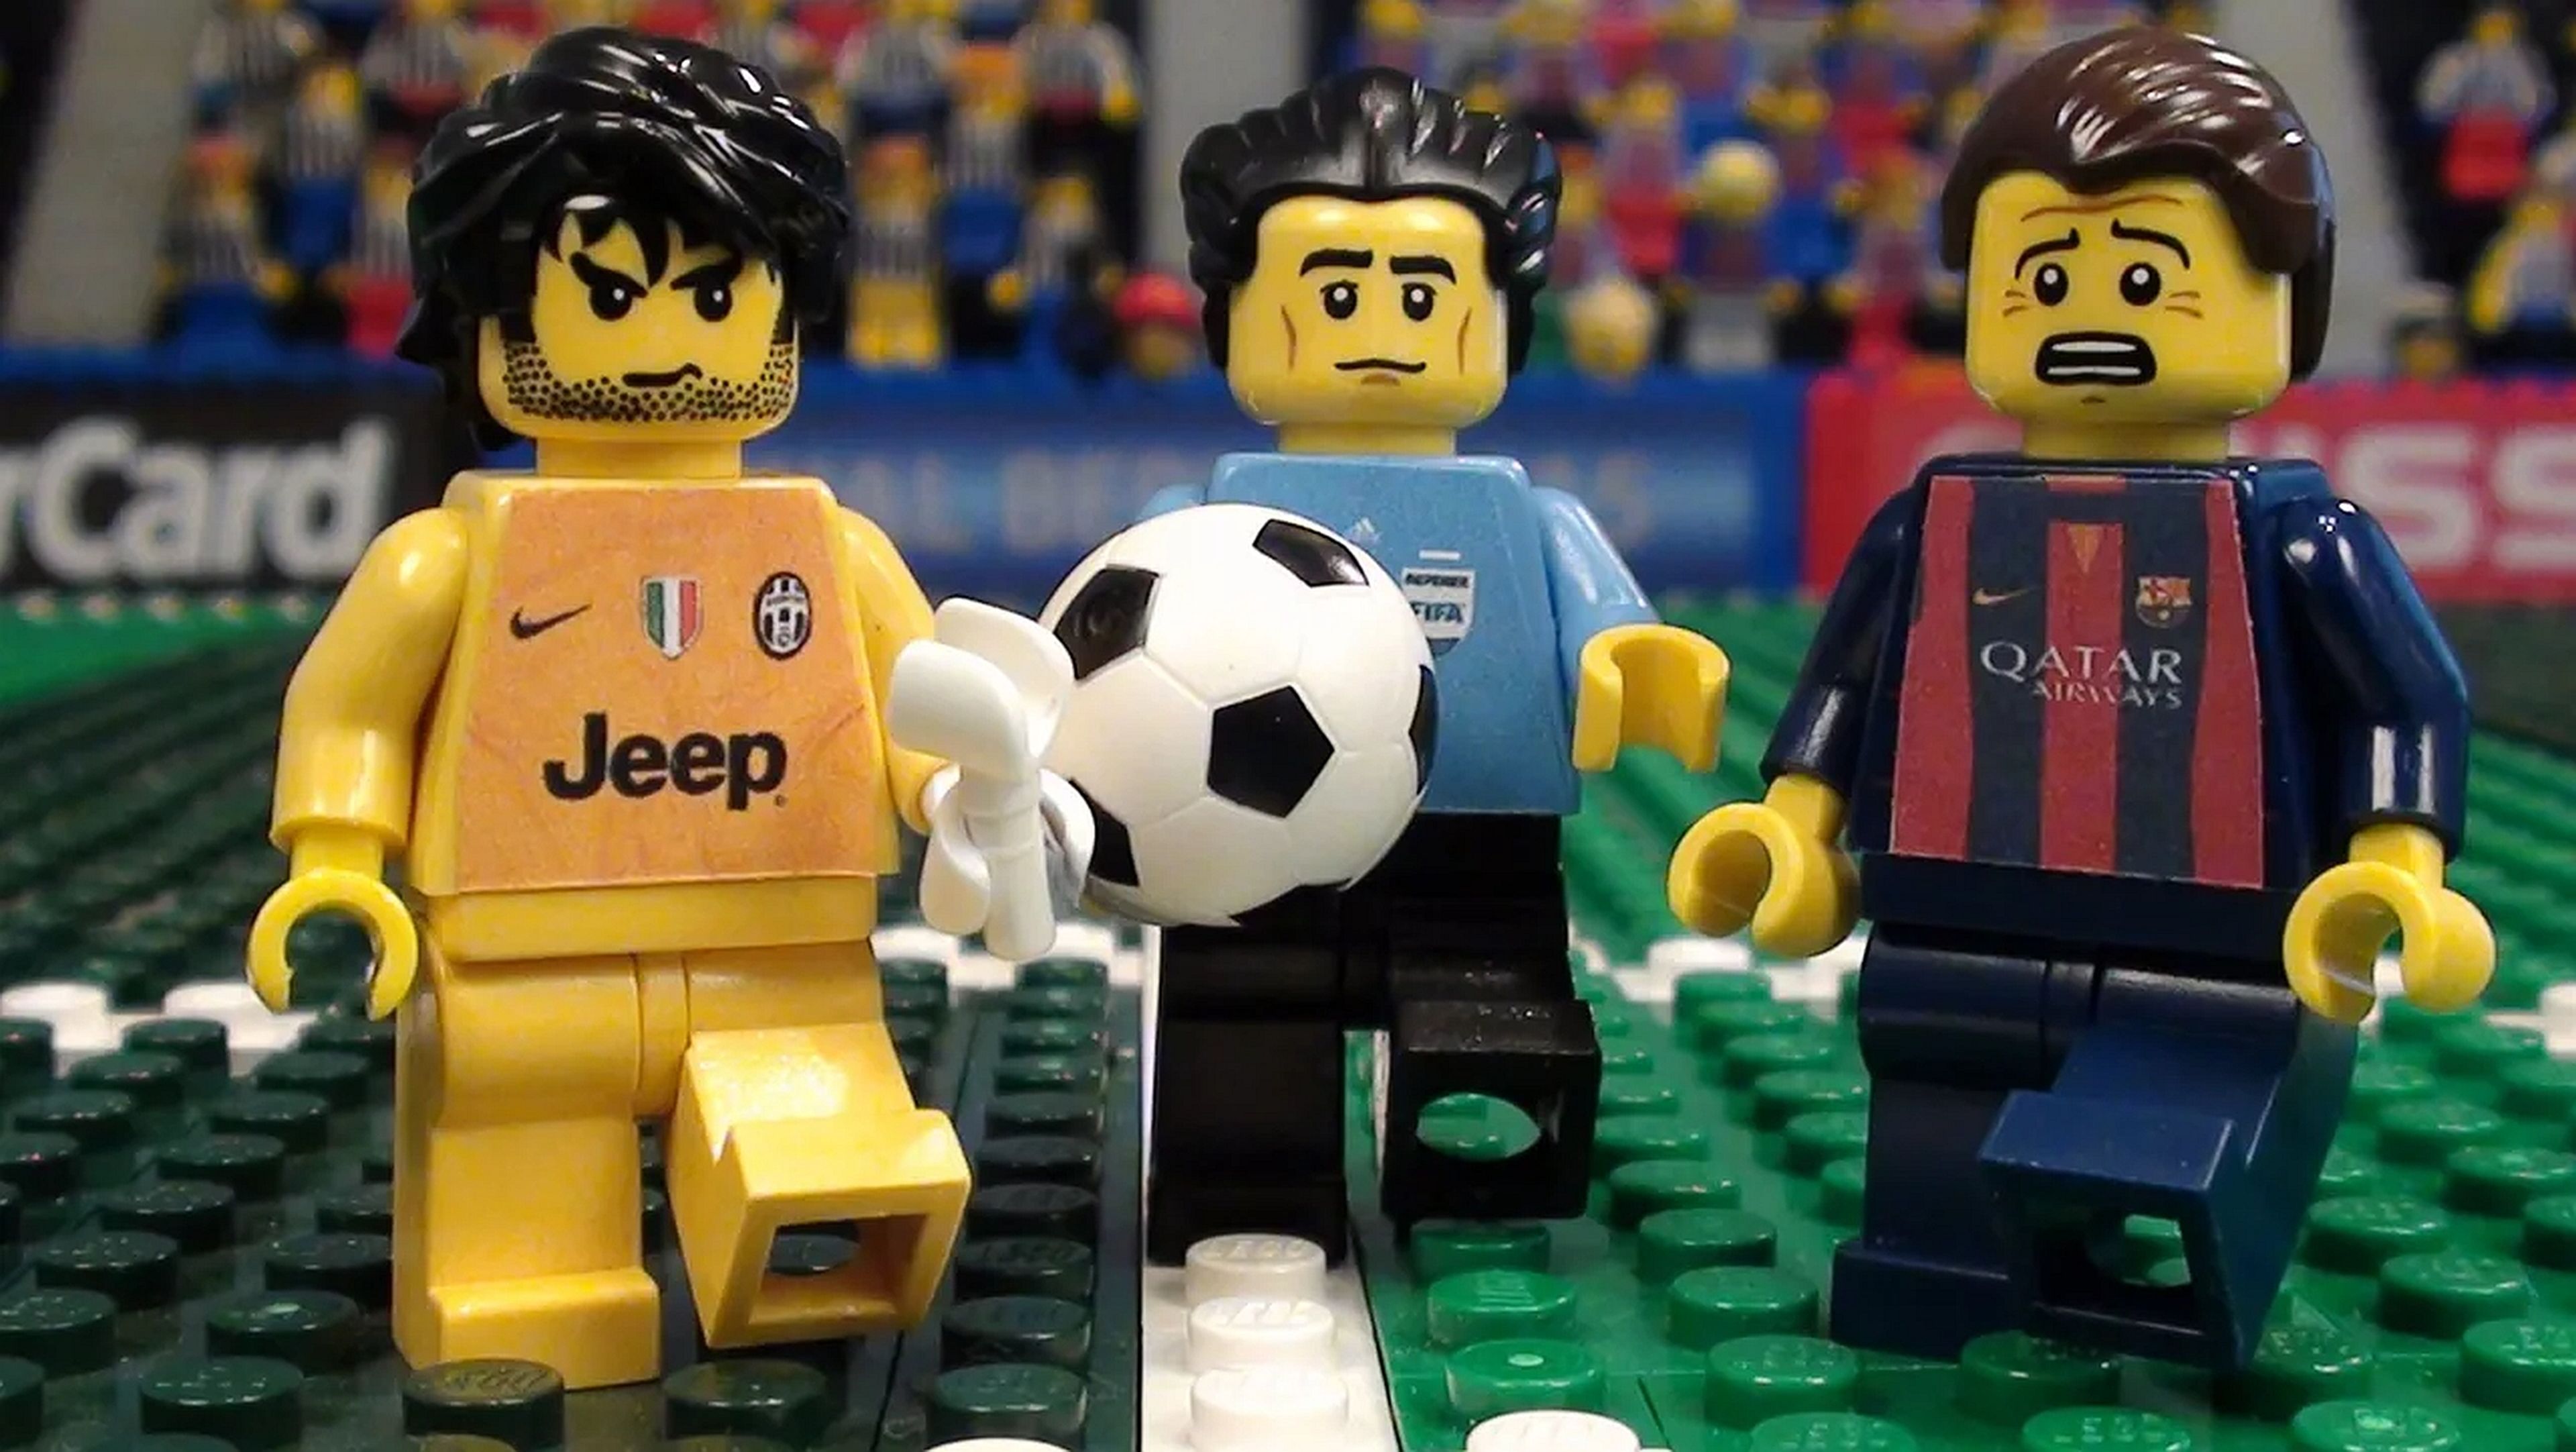 Lego 2K Goooal, el juego de fútbol de Sumo Digital, aparece